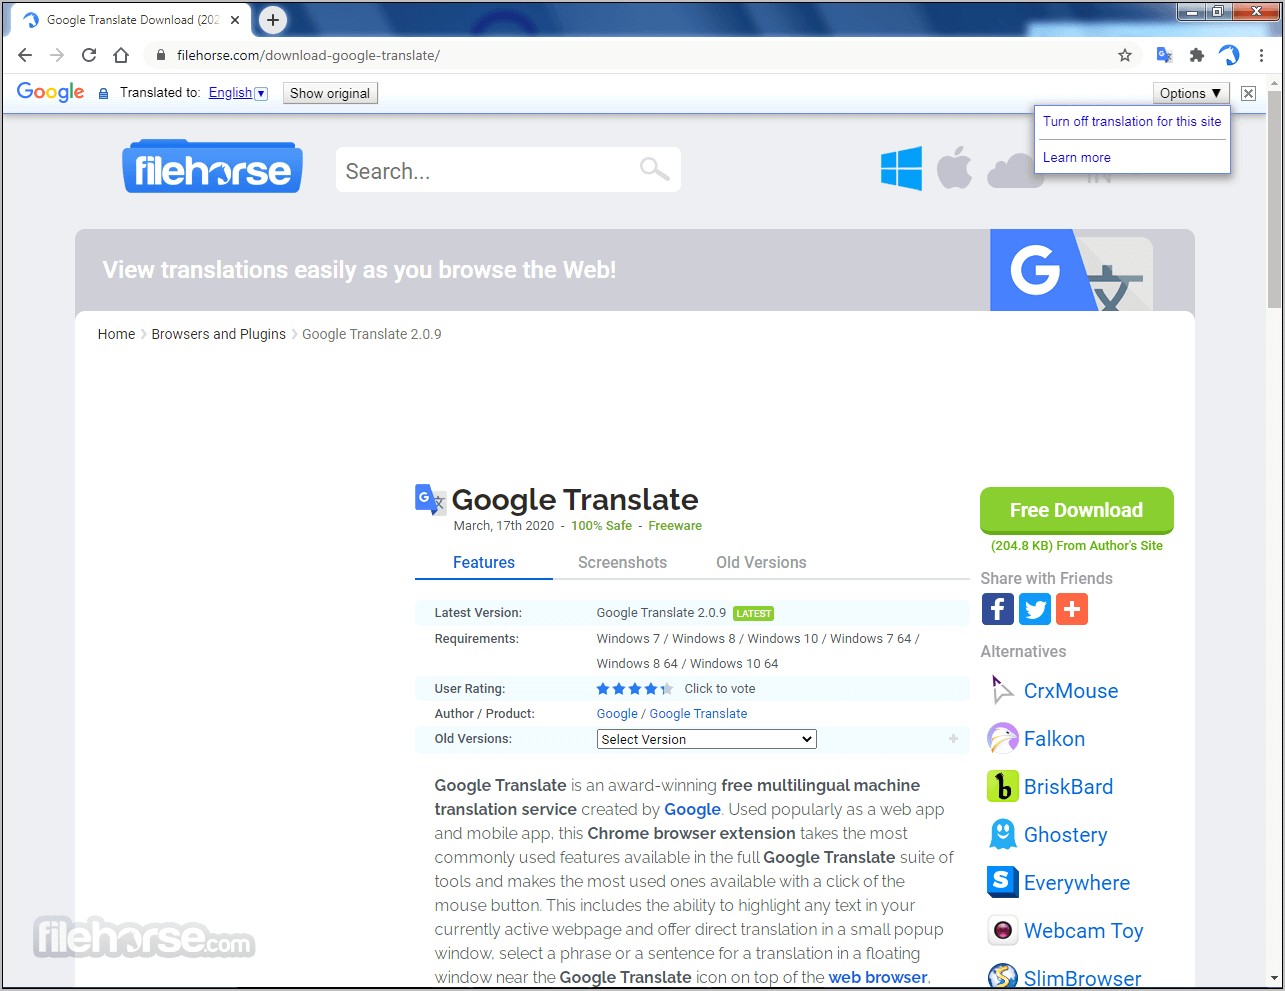 Resumed Google Translate Free Download